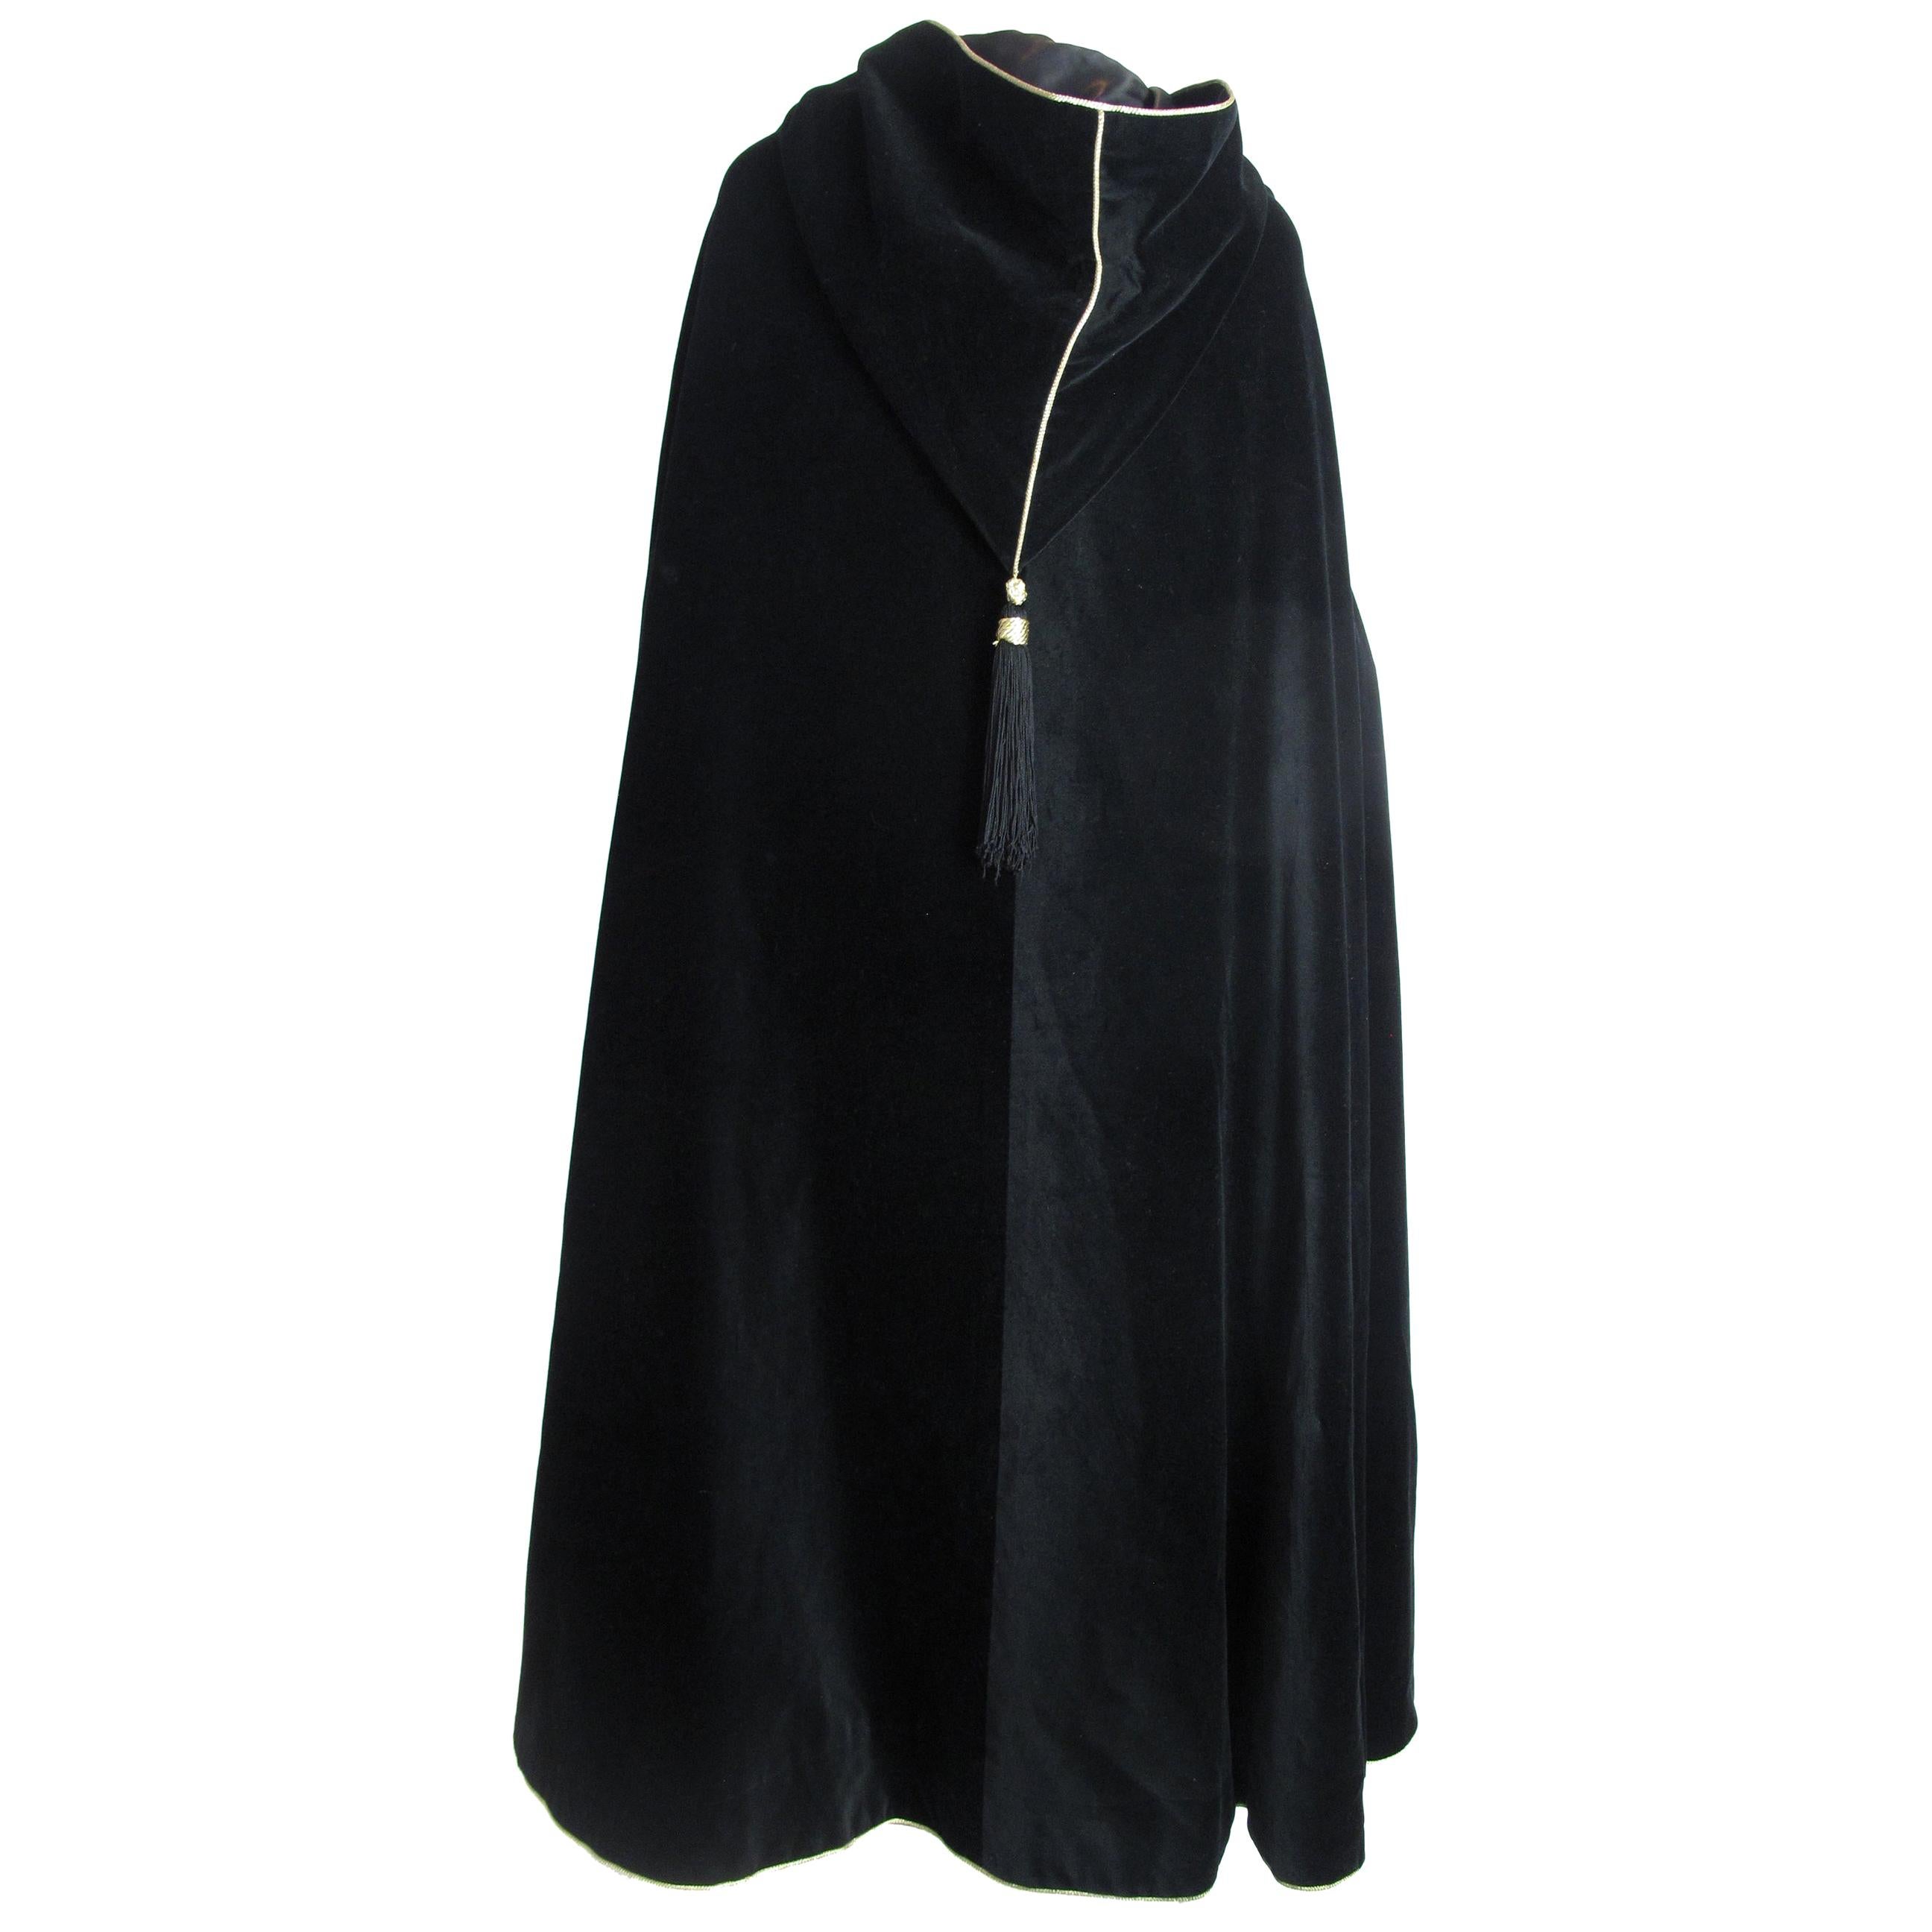 Yves Saint Laurent black velvet hooded cape with tassels. 54